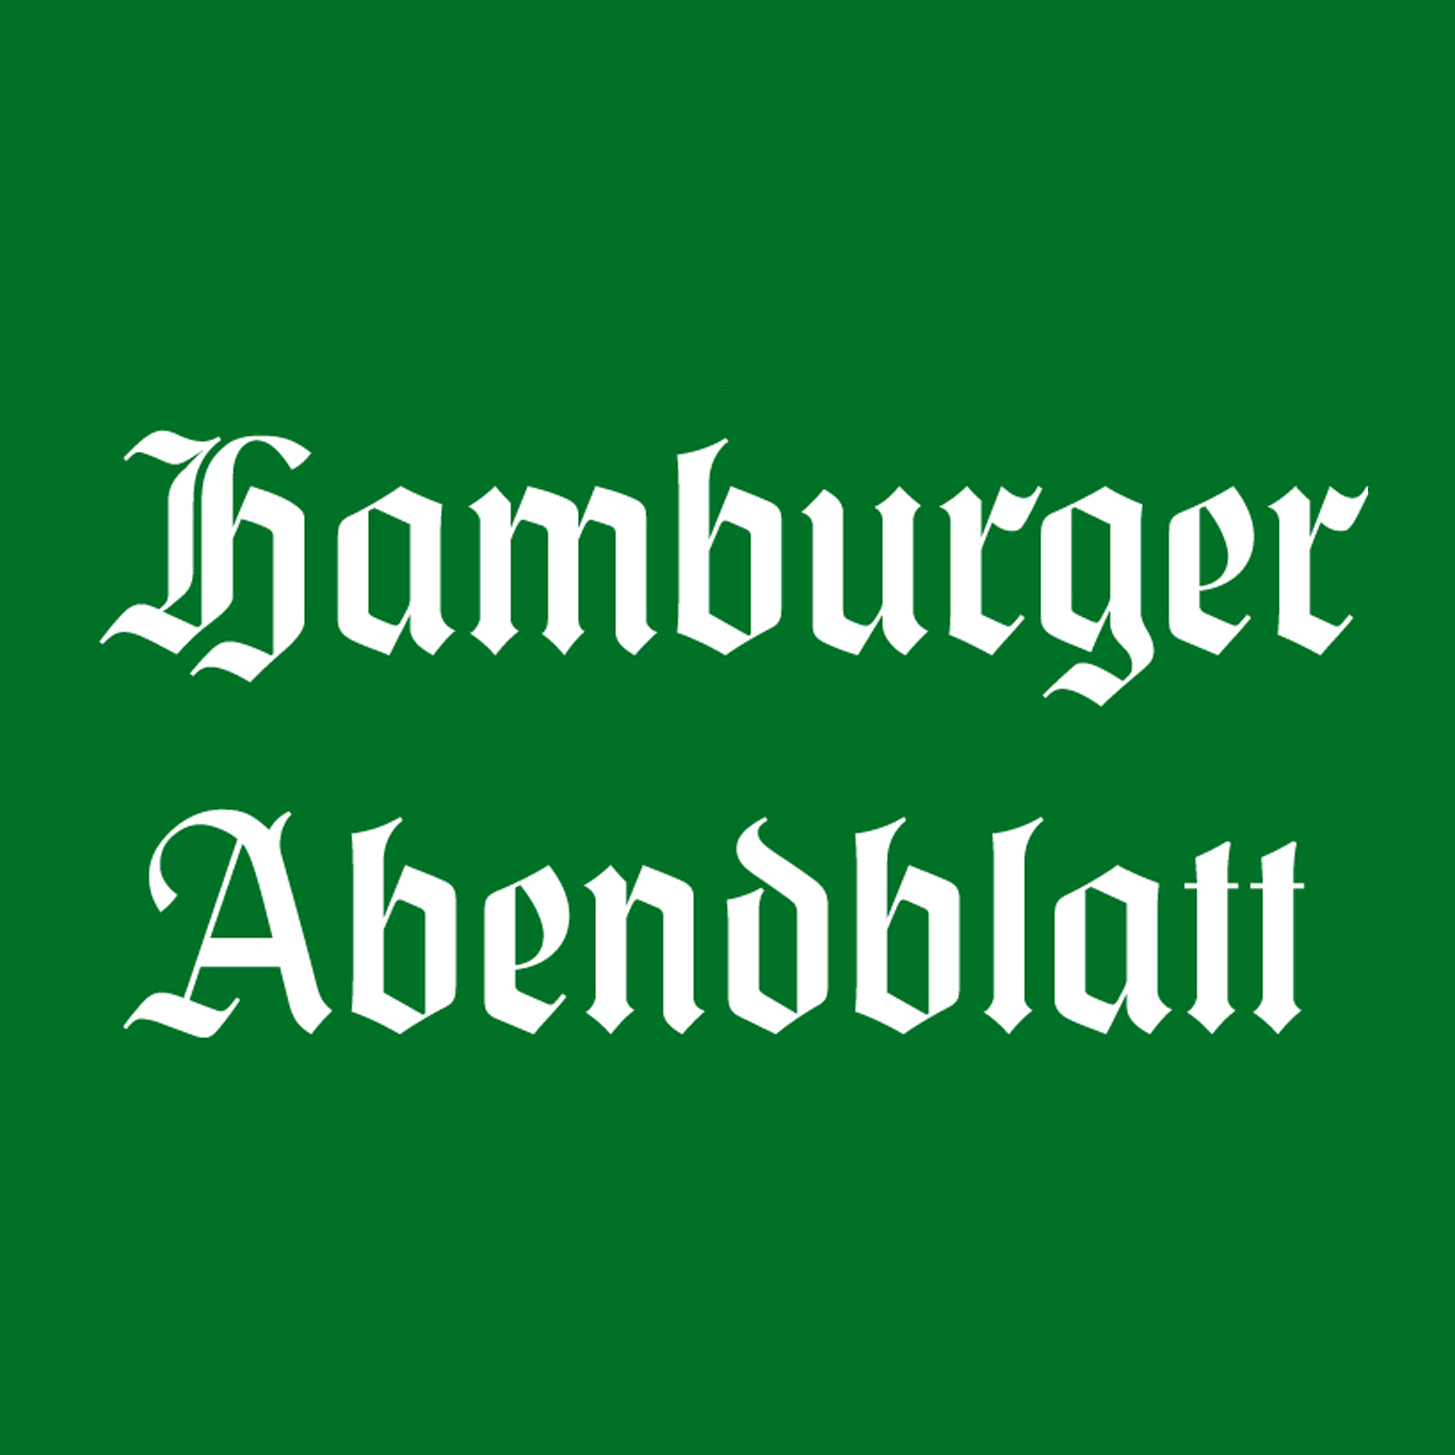 Hamburger Abendblatt KreuzwortrГ¤tsel Kostenlos